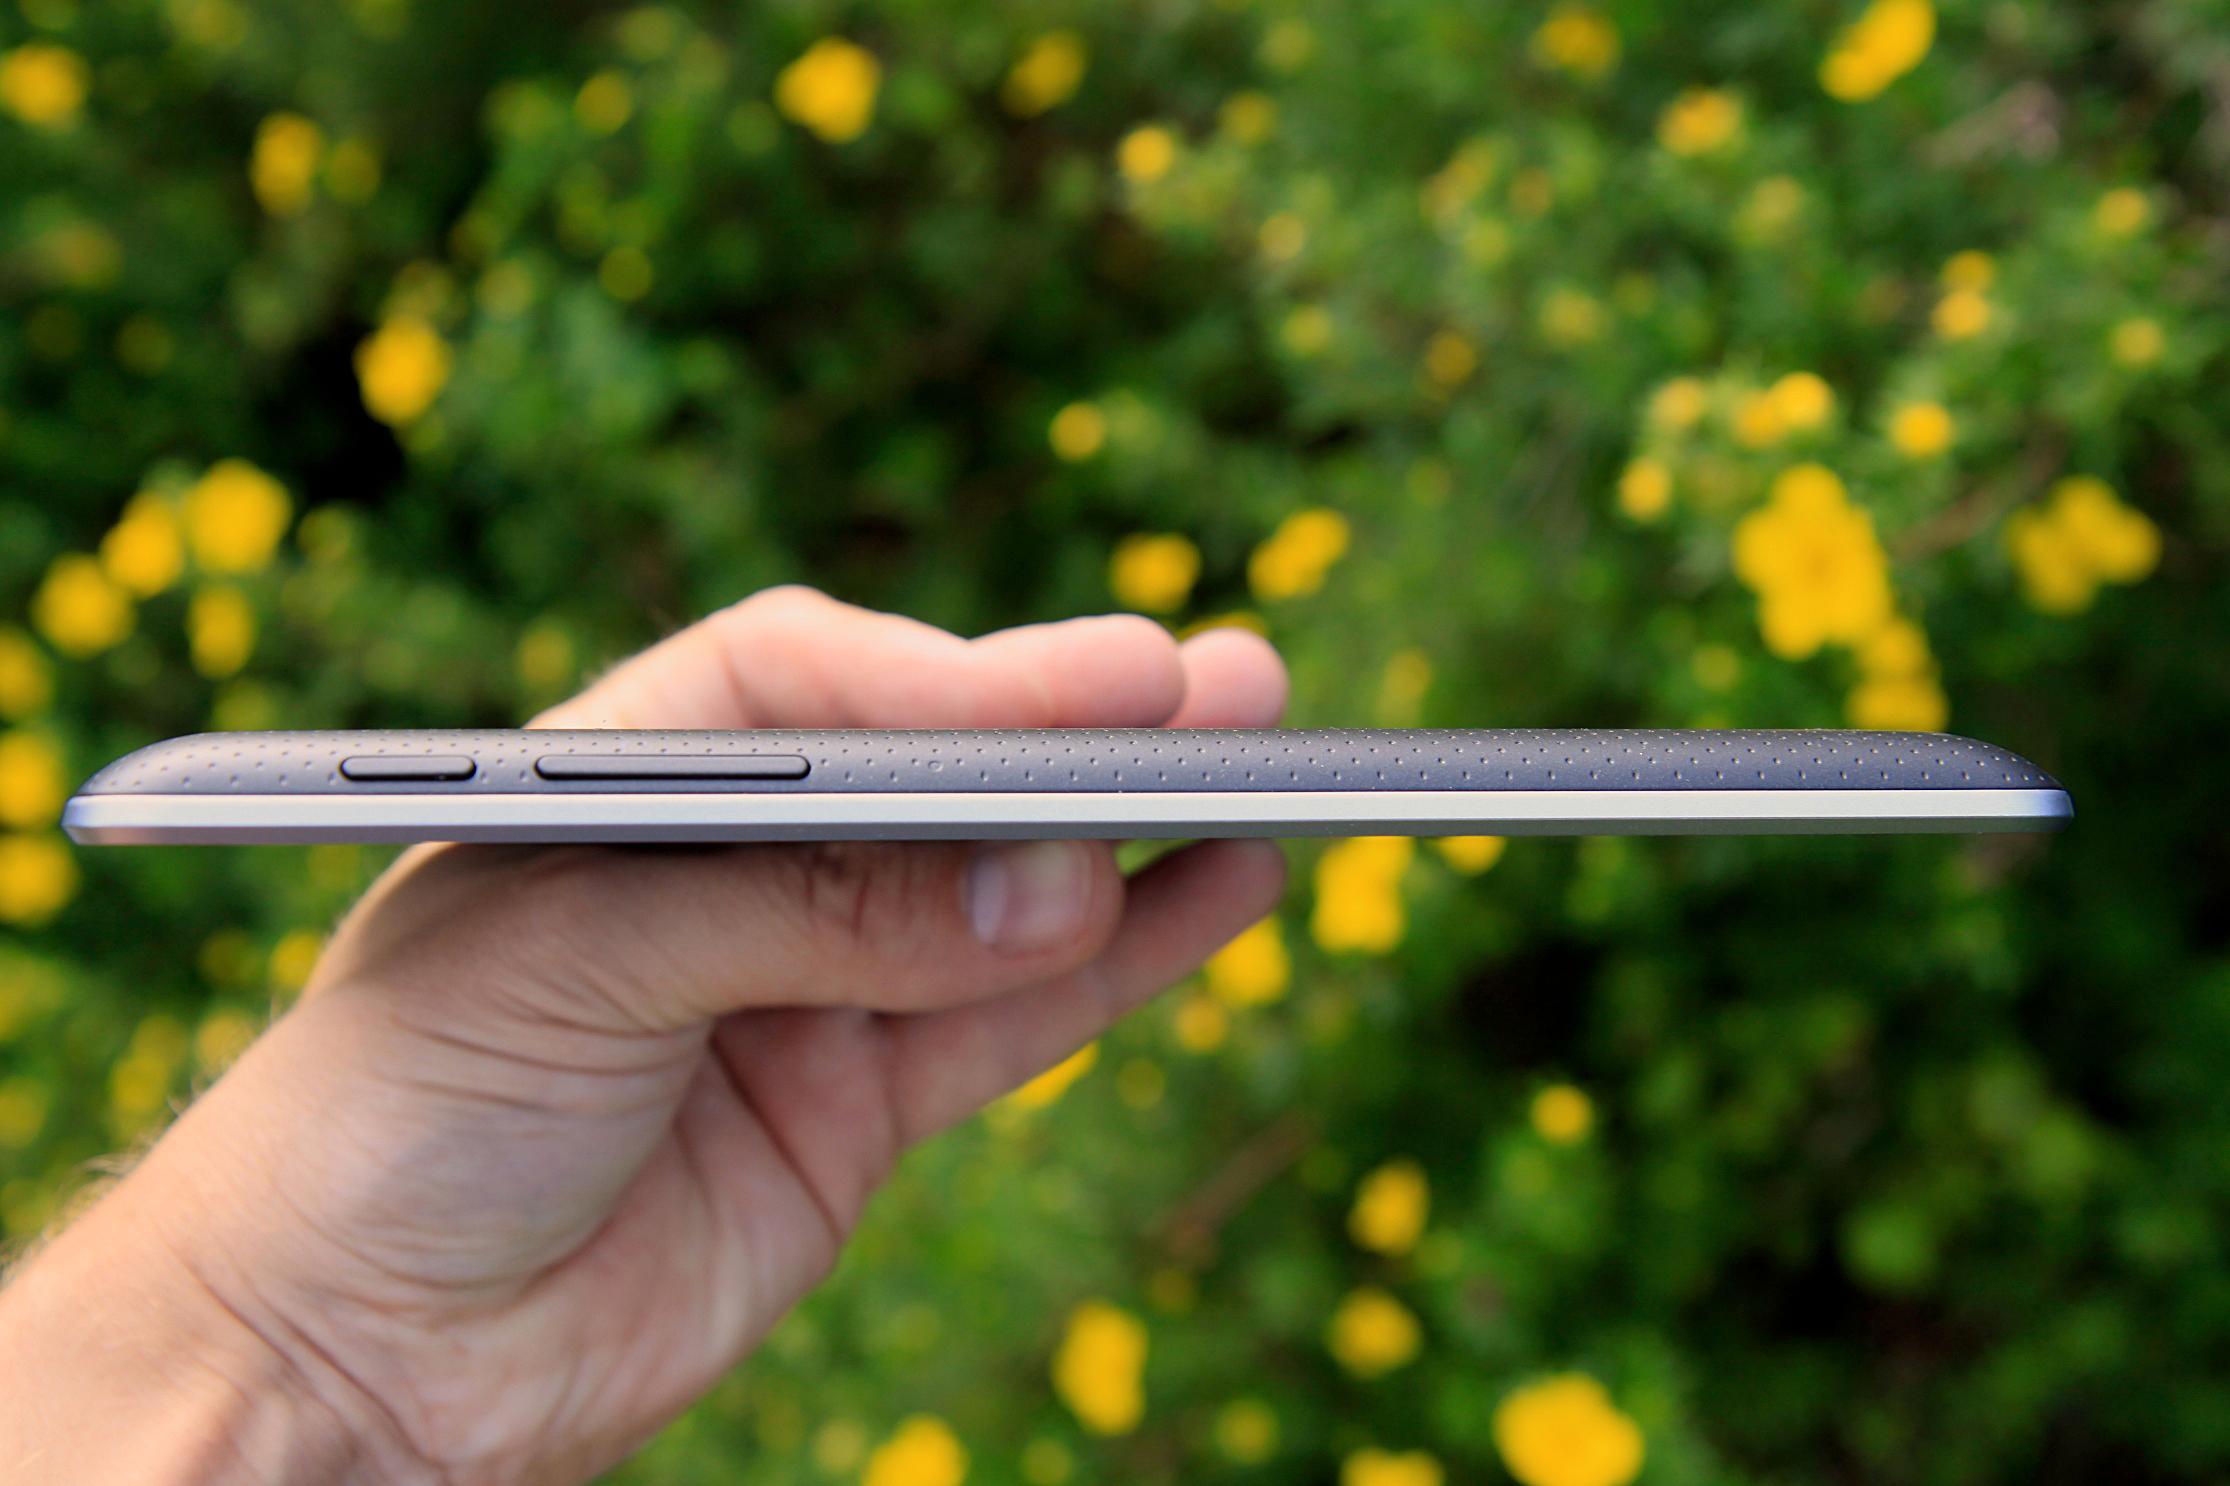 Google Nexus 7 er med sine 10,5 millimeter tykkere enn 10-tommers nettbrett som iPad og Samsung Galaxy Tab 2 10.1.Foto: Kurt Lekanger, Amobil.no